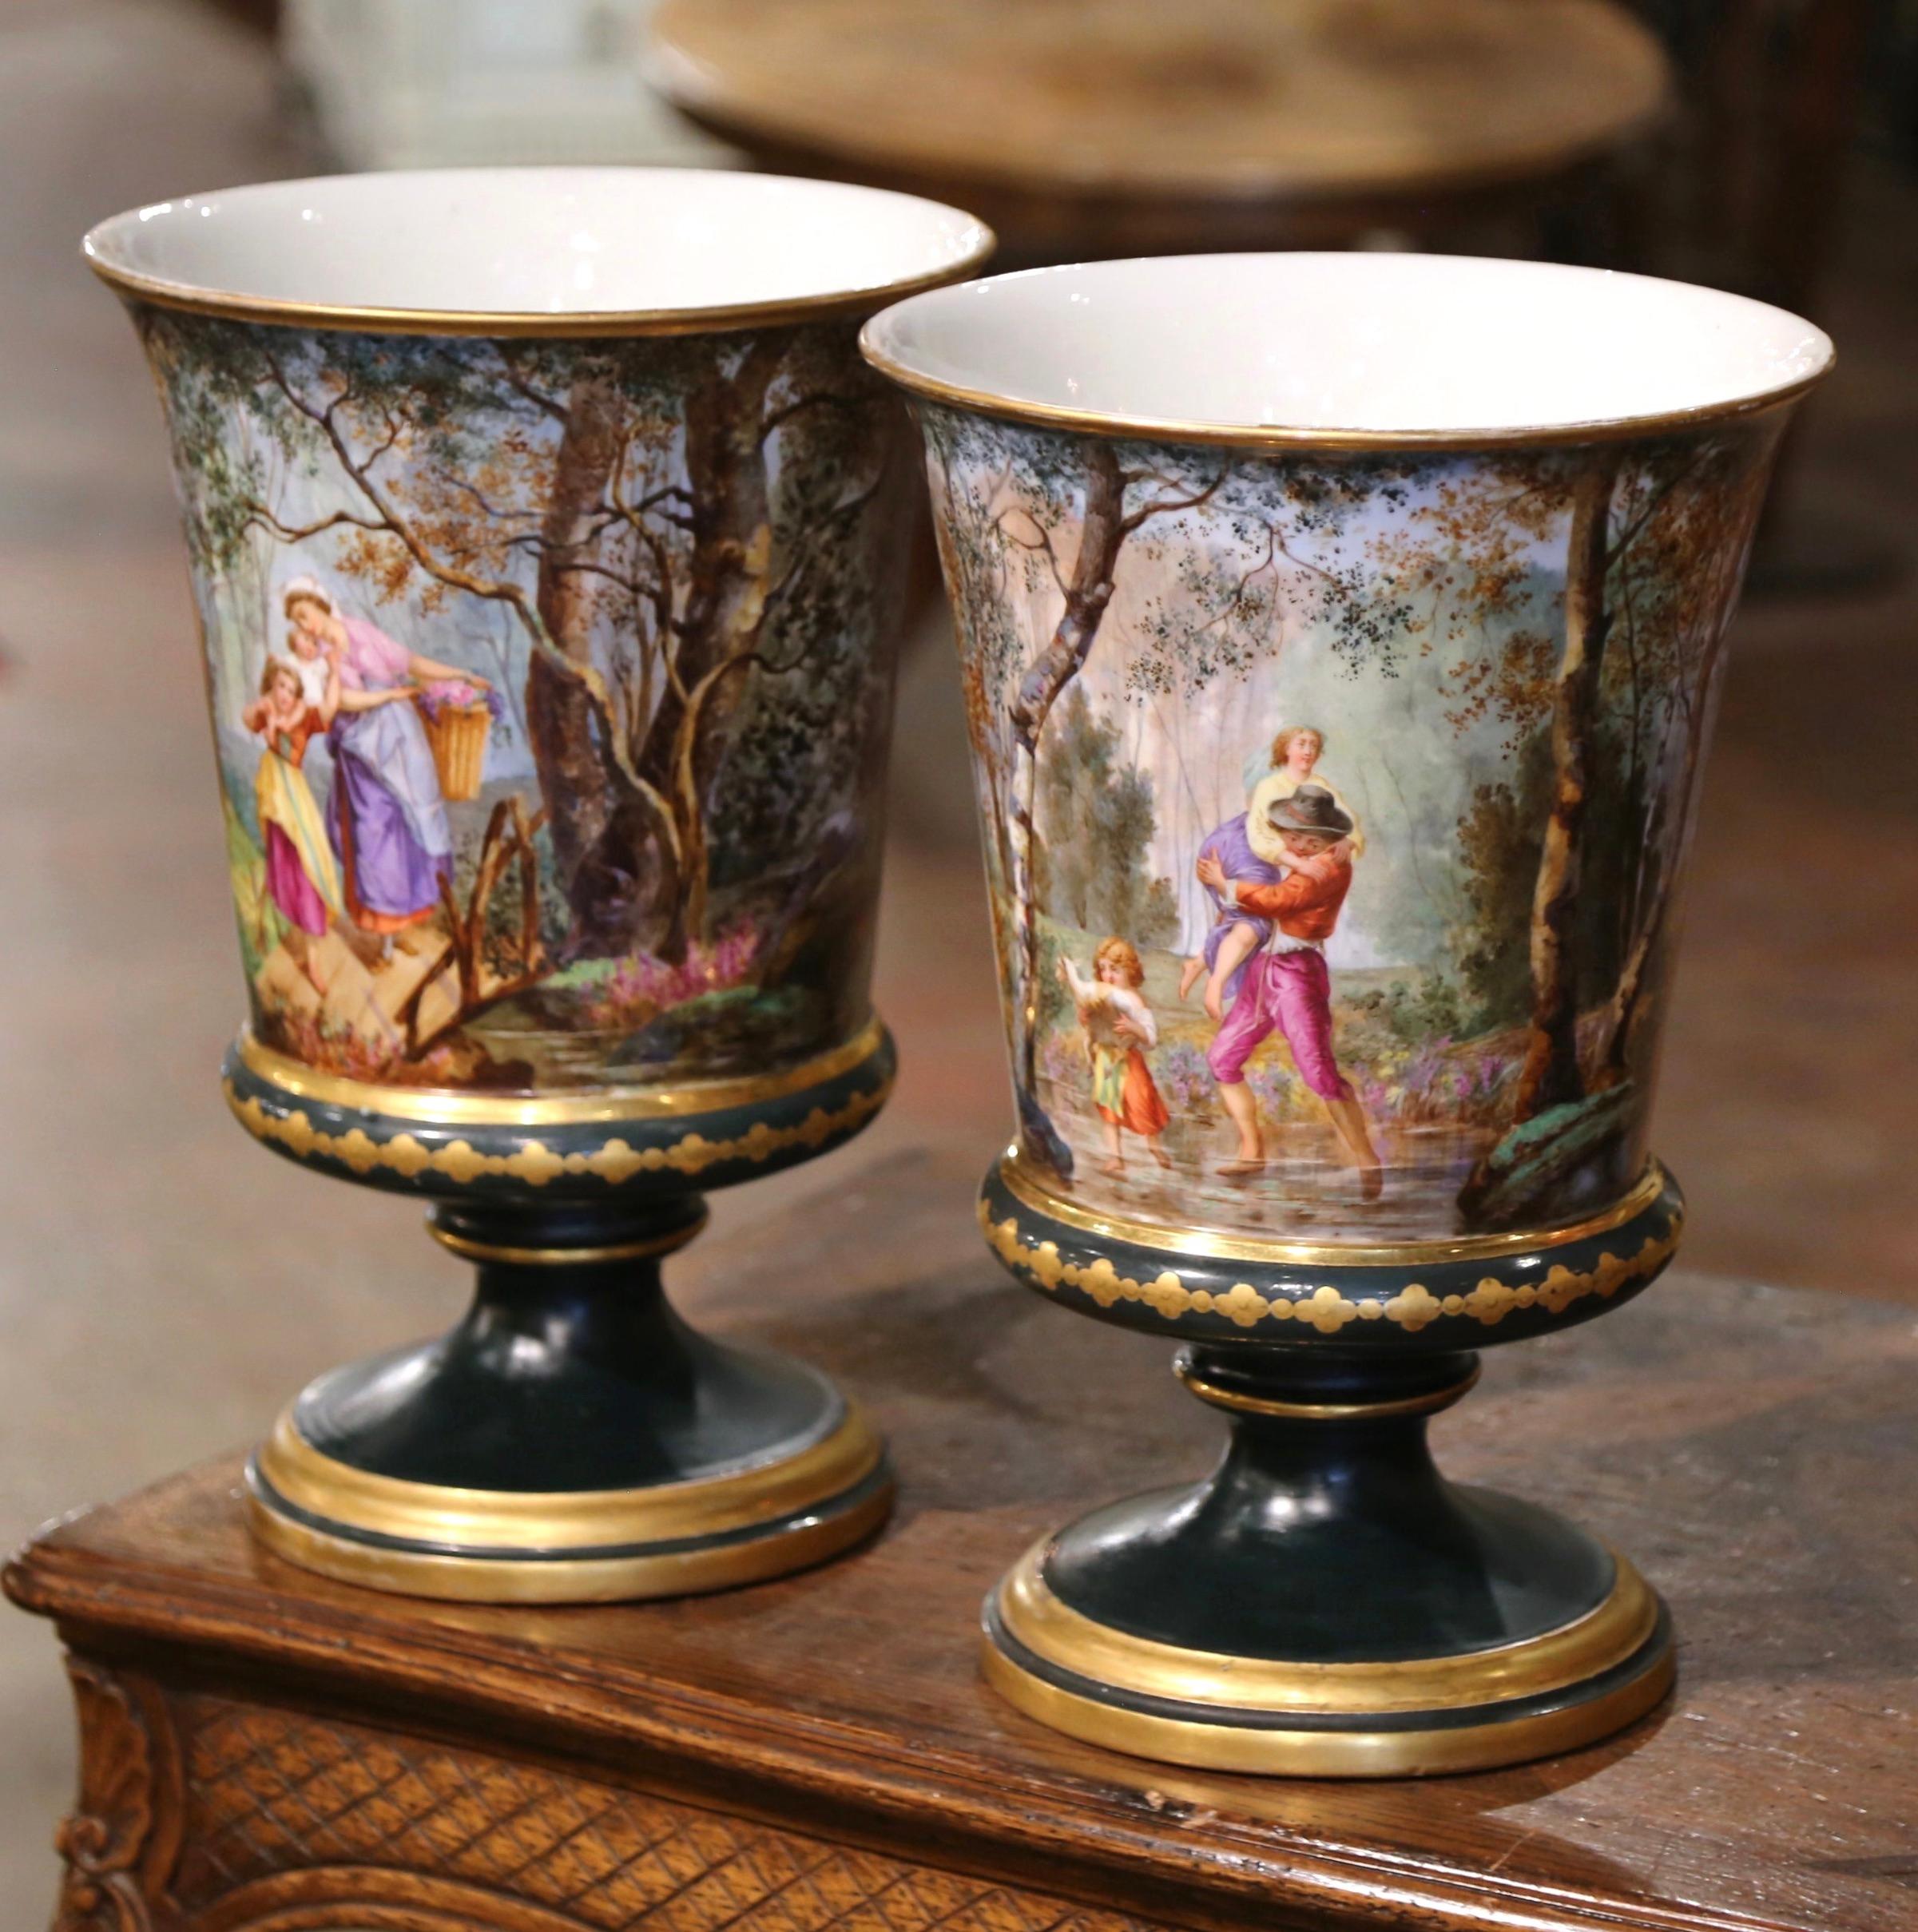 Décorez une cheminée, une console ou un buffet avec cette paire de vases antiques colorés. Fabriqués à la main en France vers 1870 et attribués à la Manufacture de Porcelaine de Paris, les grands récipients reposent sur une base ronde intégrale